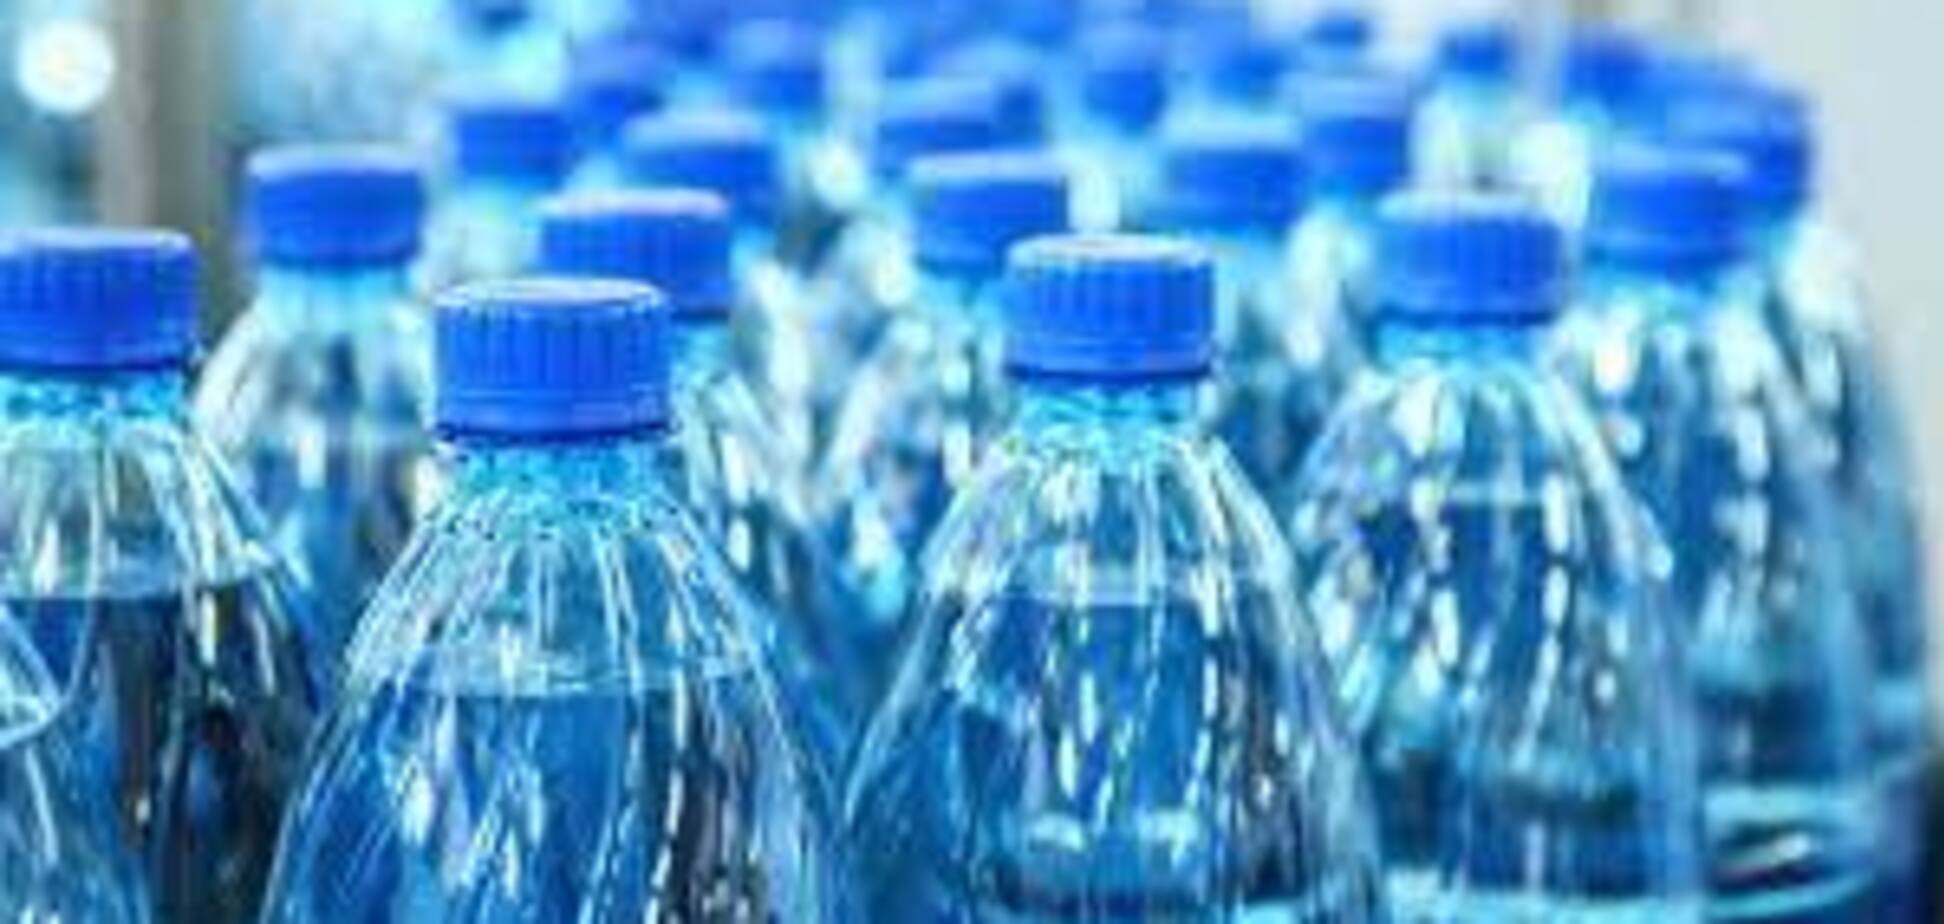 Жителей Курахово снабдили питьевой водой из Кураховской ТЭС, – мэр